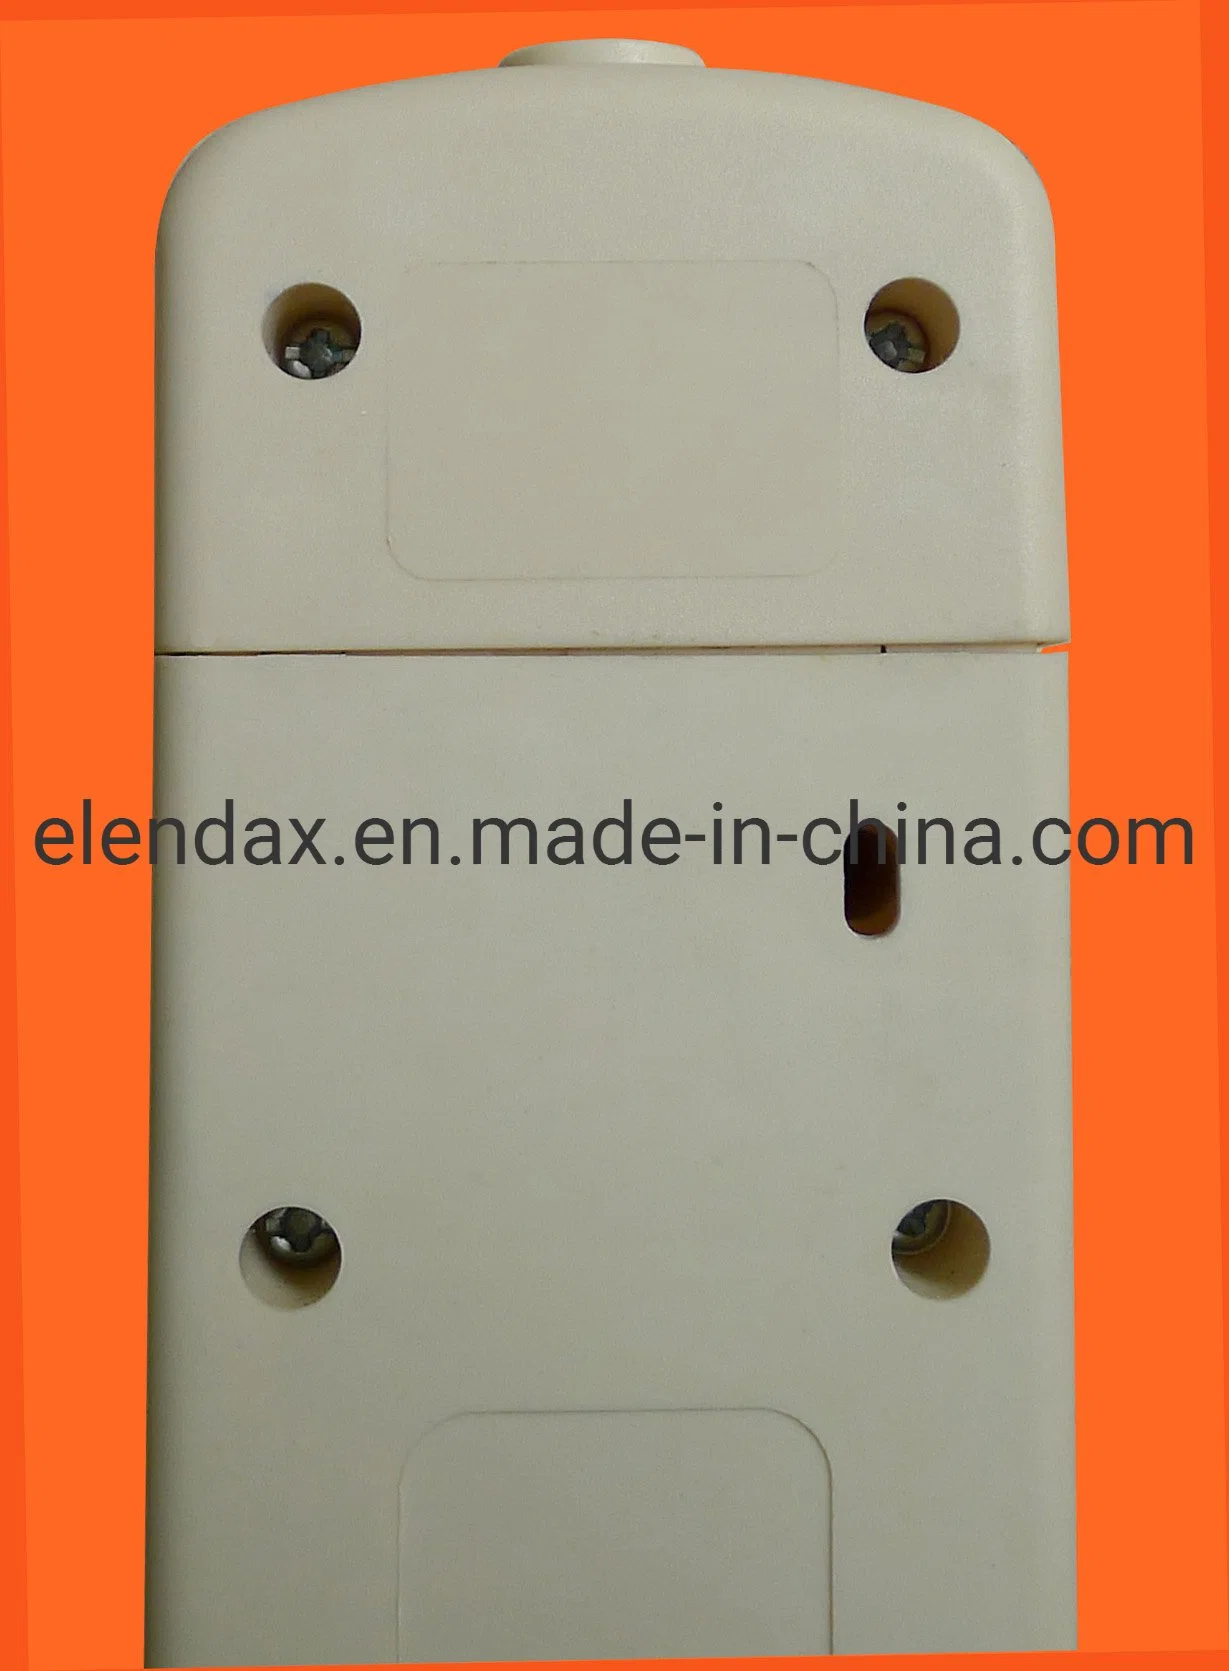 Enchufe tipo UE conector hembra de control remoto inalámbrico RF para uso doméstico Aparatos